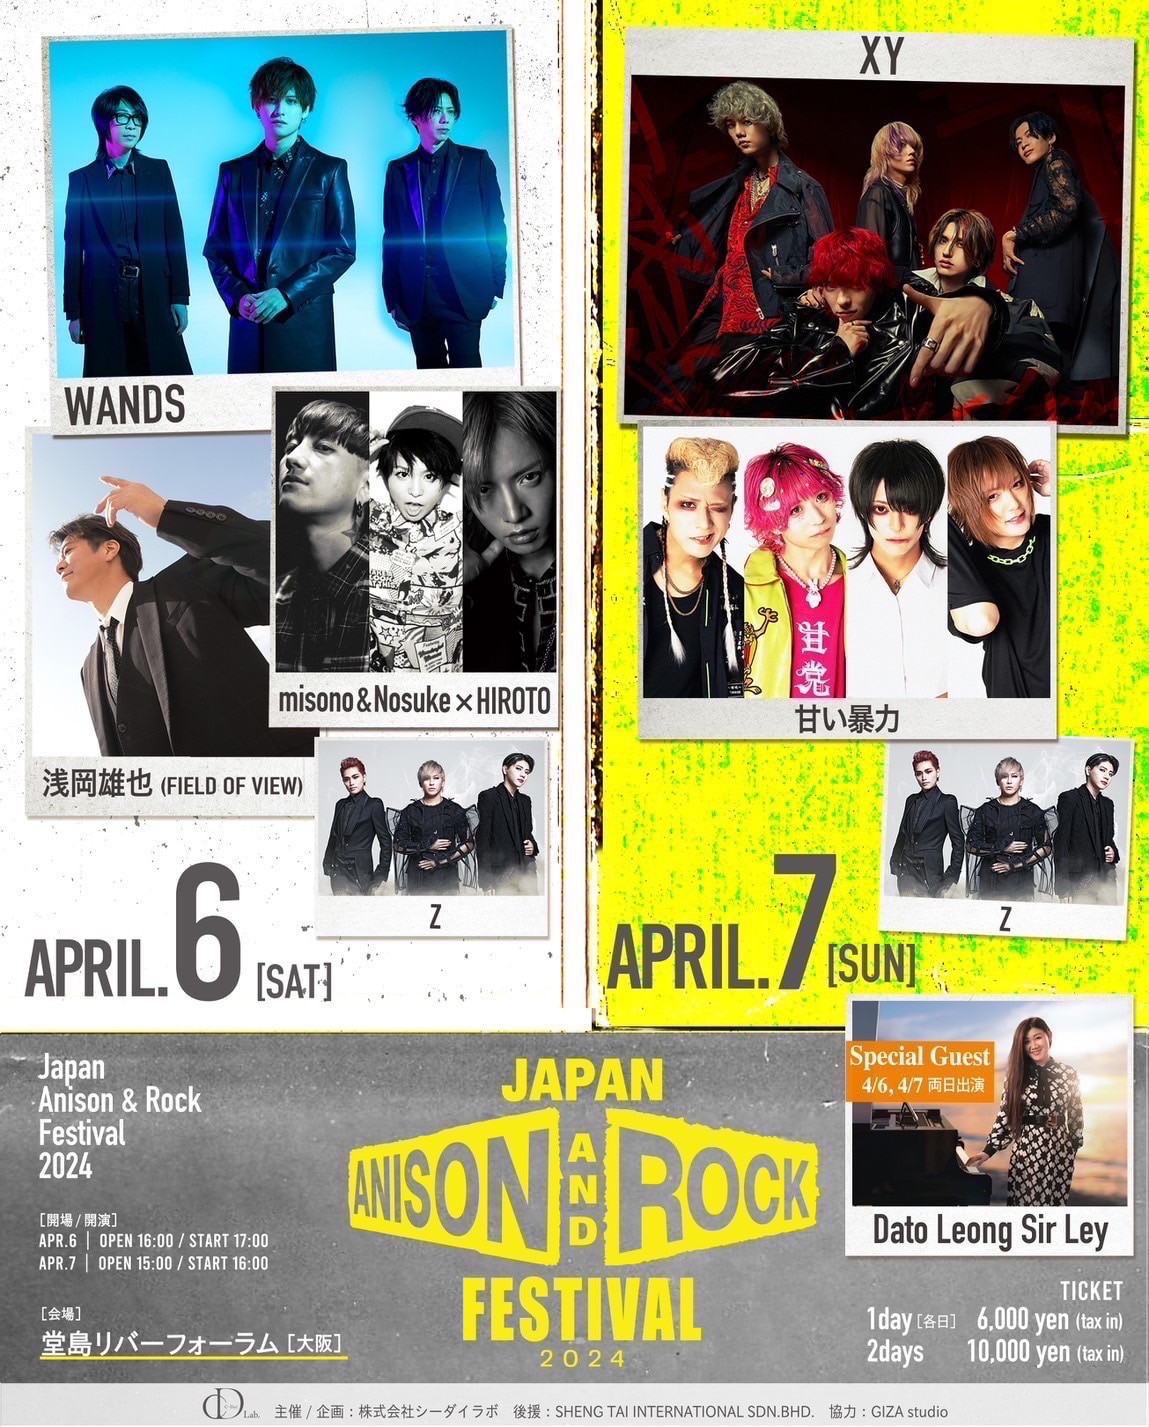 4月7日、大阪・堂島リバーフォーラムで行われる「Japan Anison & Rock 